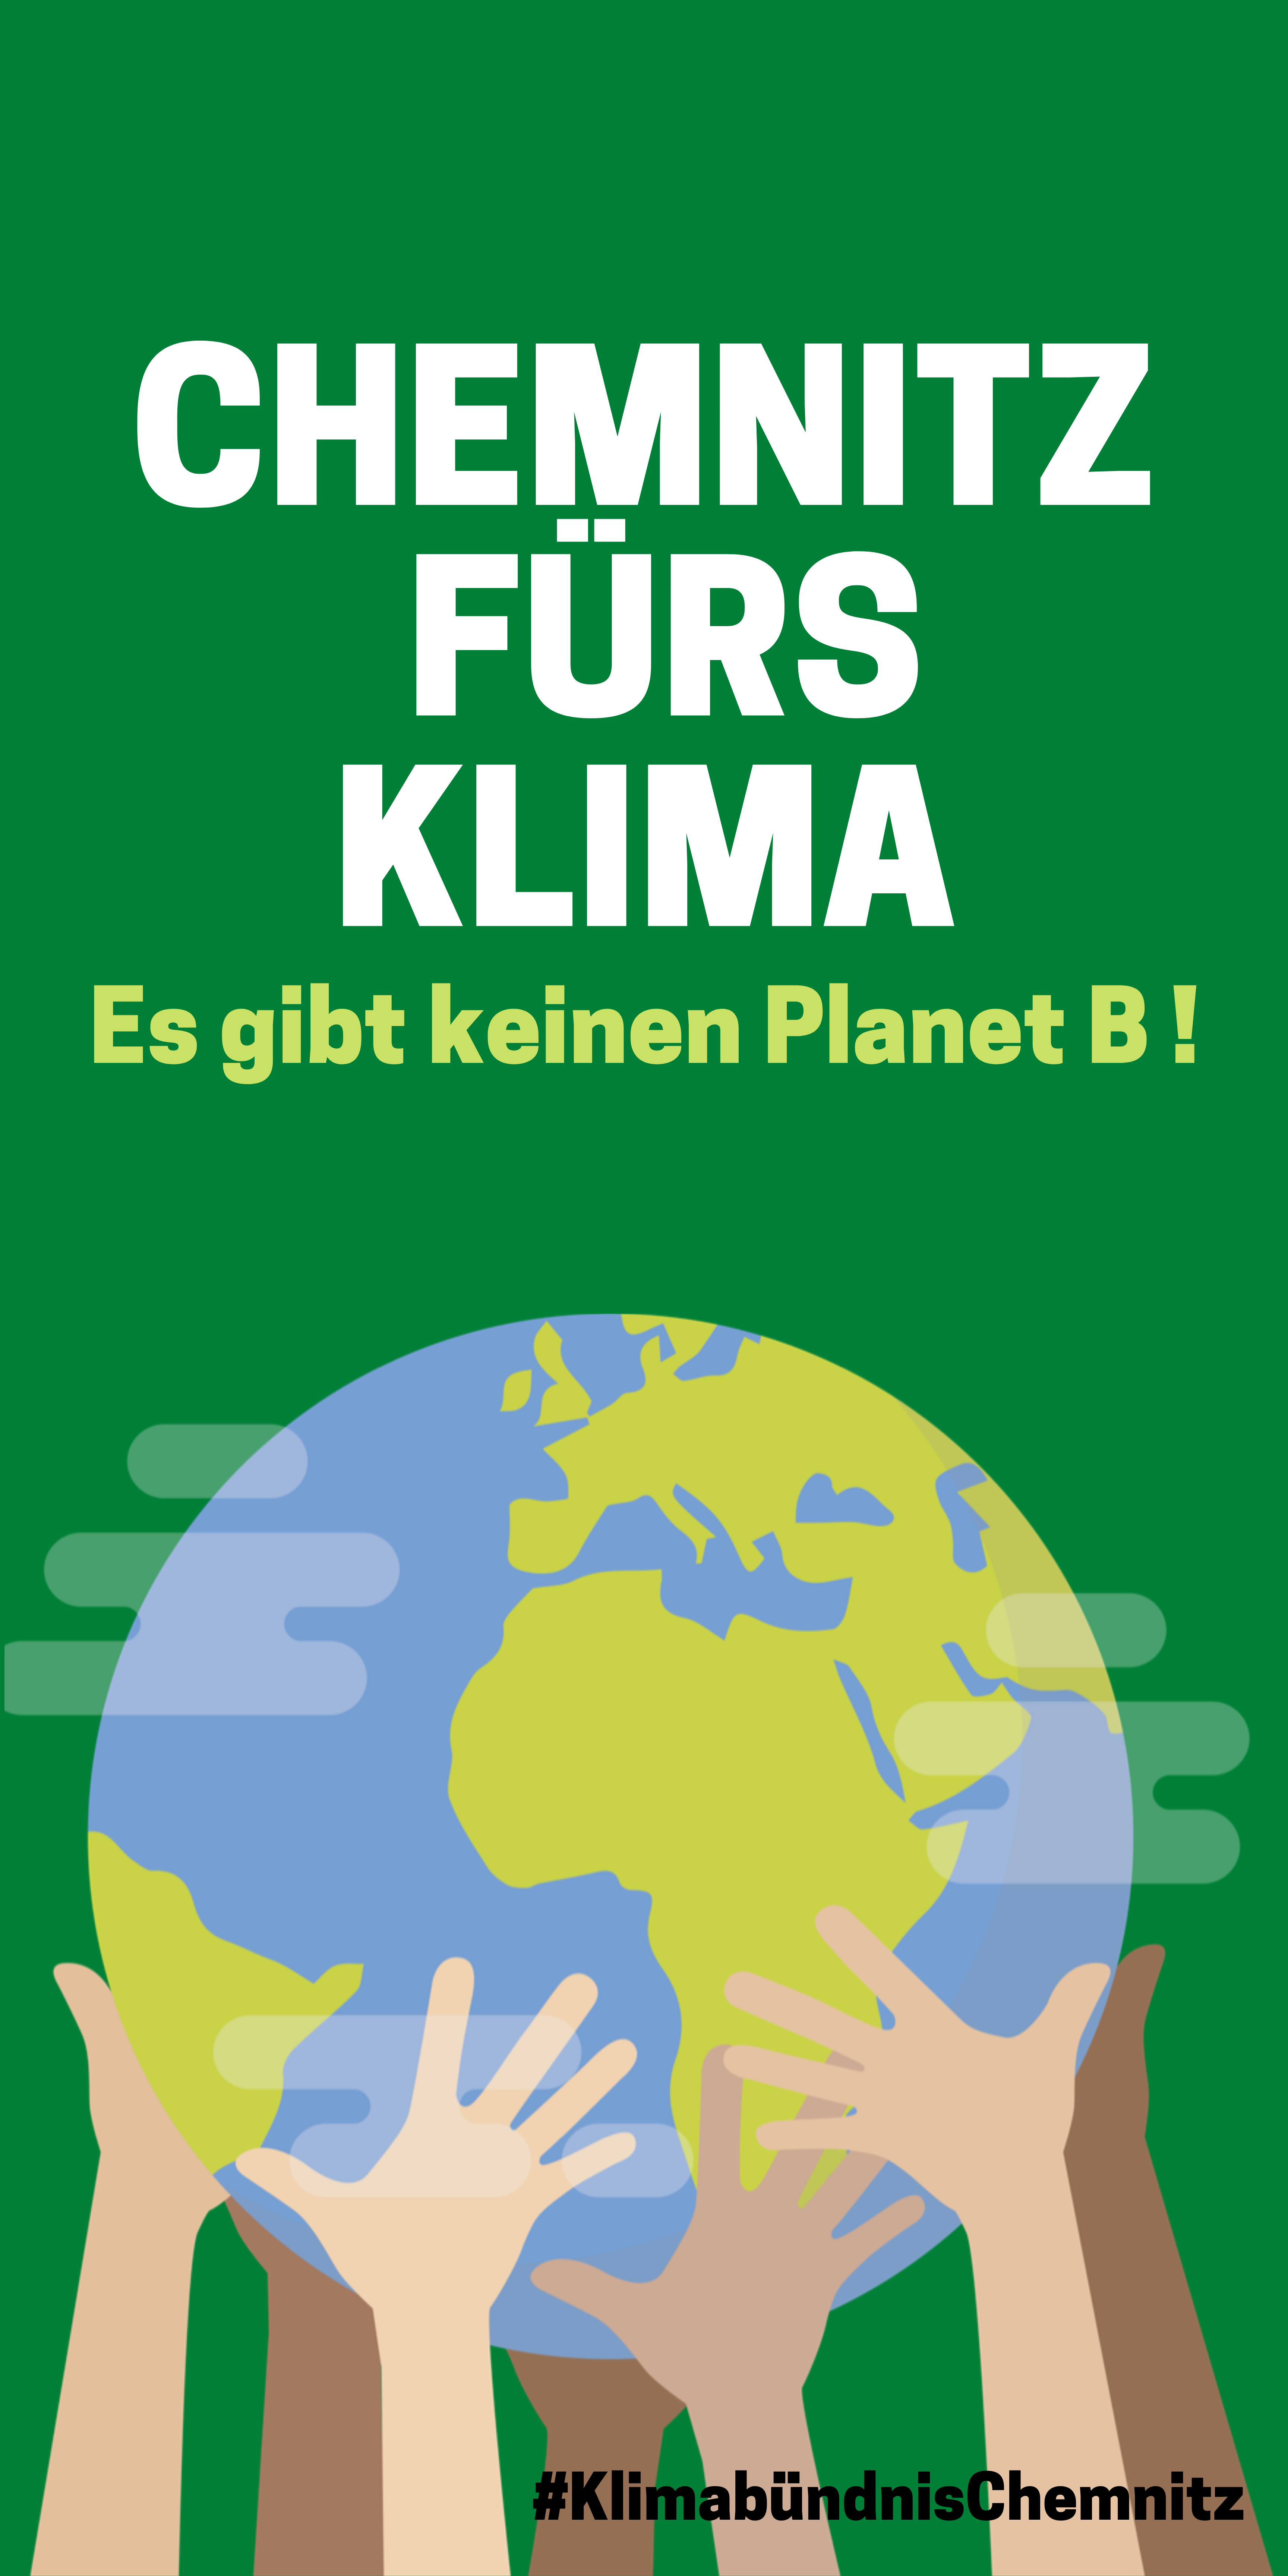 Klimabanner "Chemnitz fürs Klima" mit Weltkugel, gehalten von Händen diverser Hautfarben